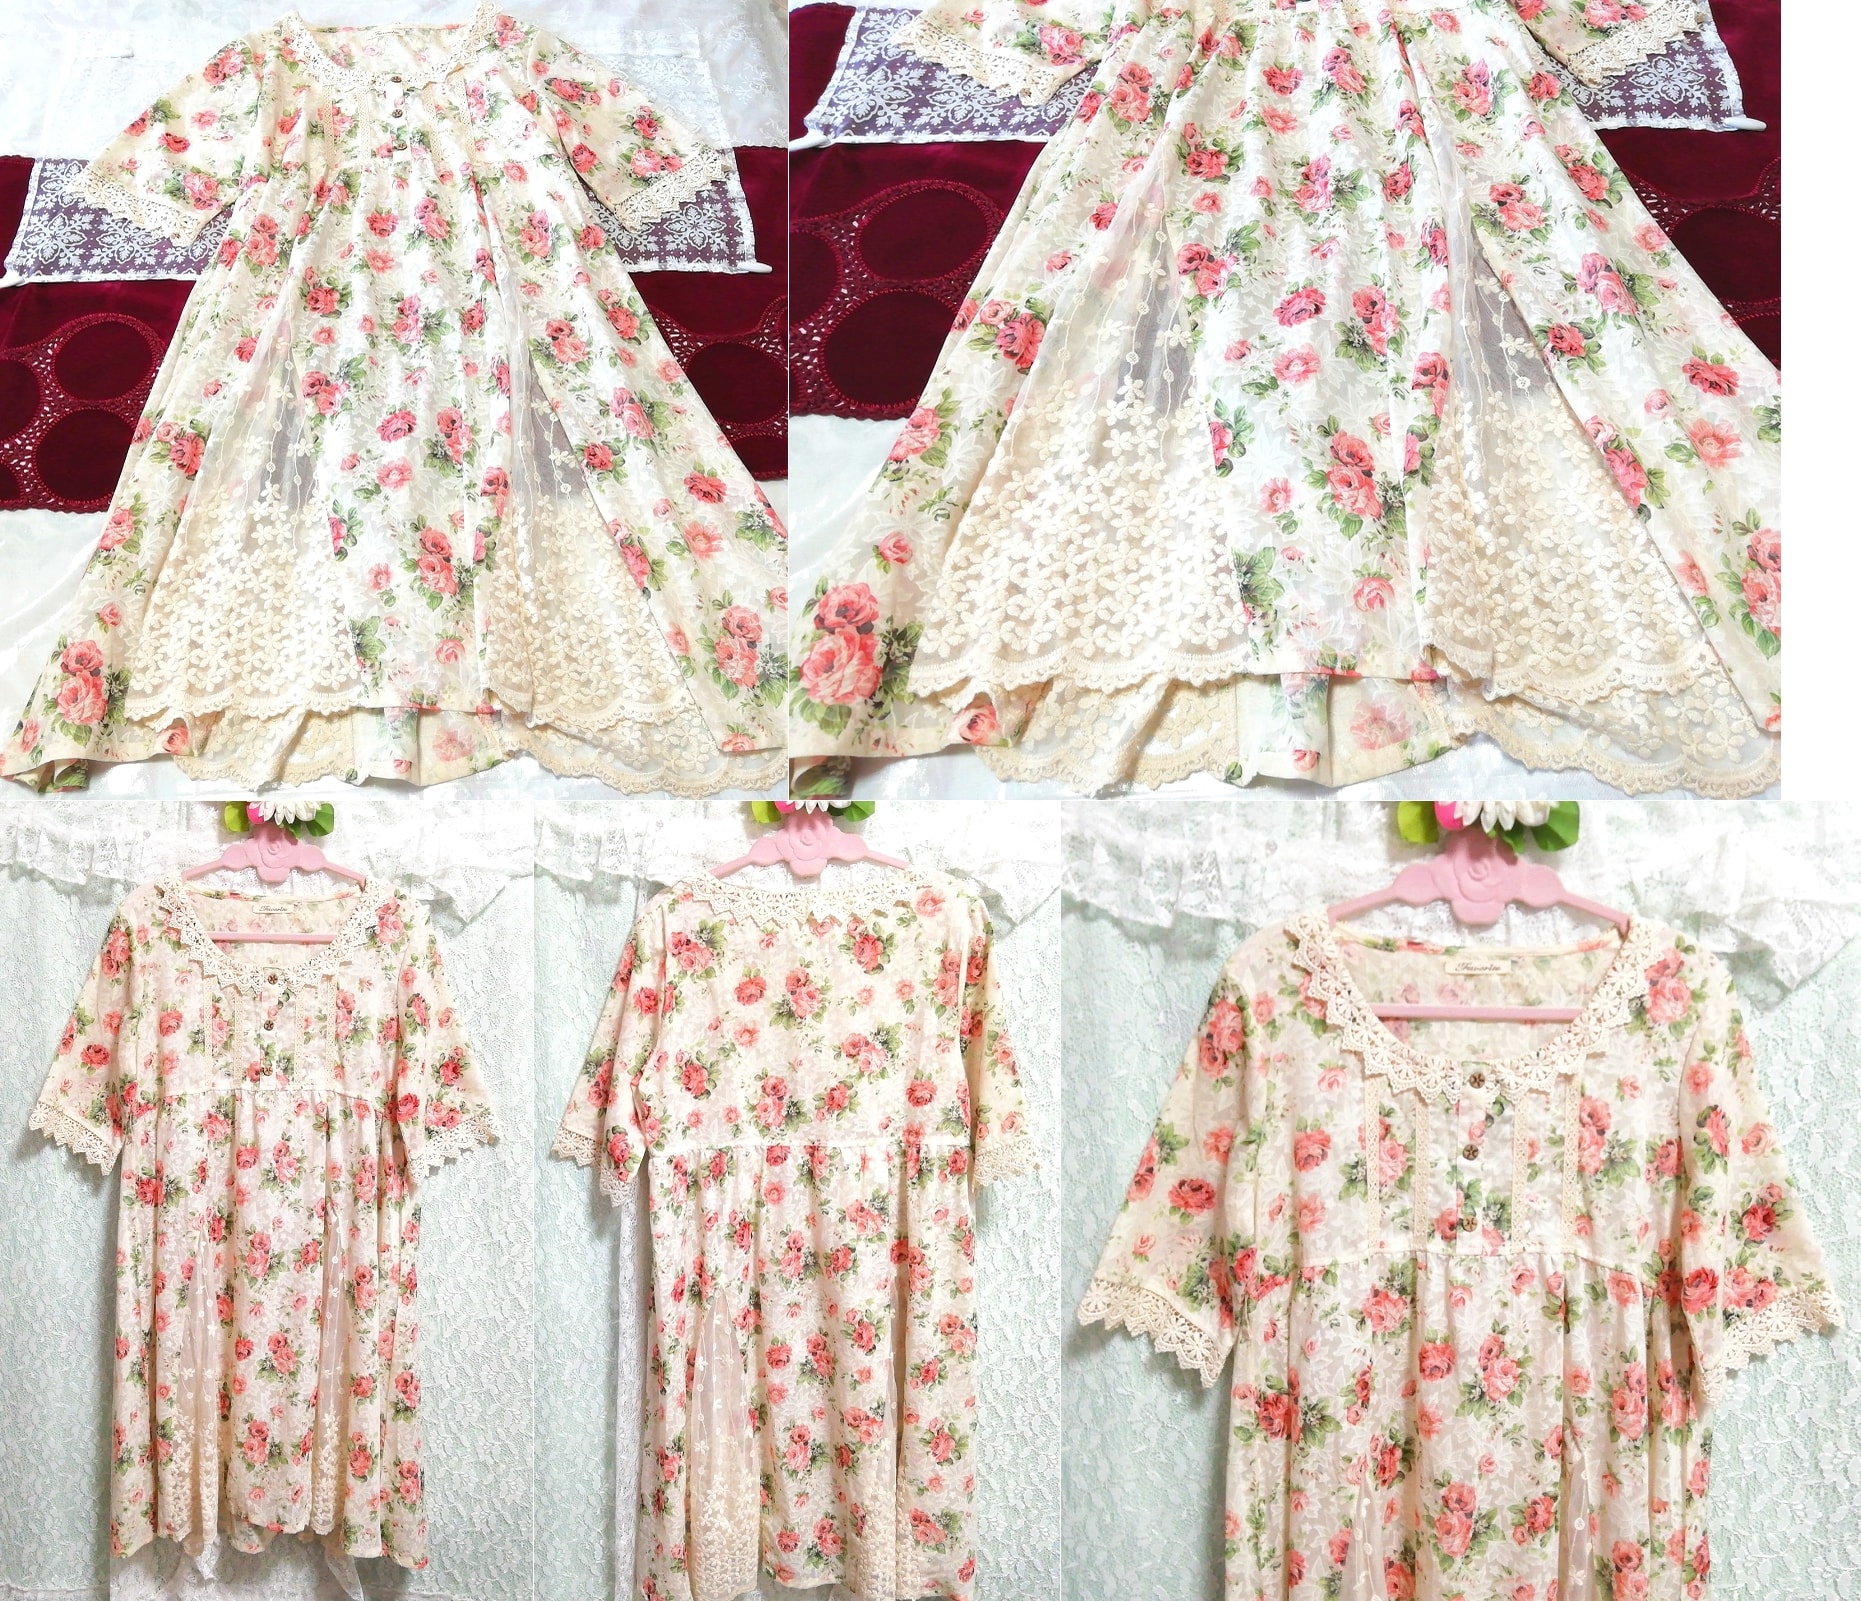 Vestido tipo camisón estilo bata tipo túnica de manga corta con encaje de princesa de algodón y estampado floral de lino, sayo, manga corta, talla m